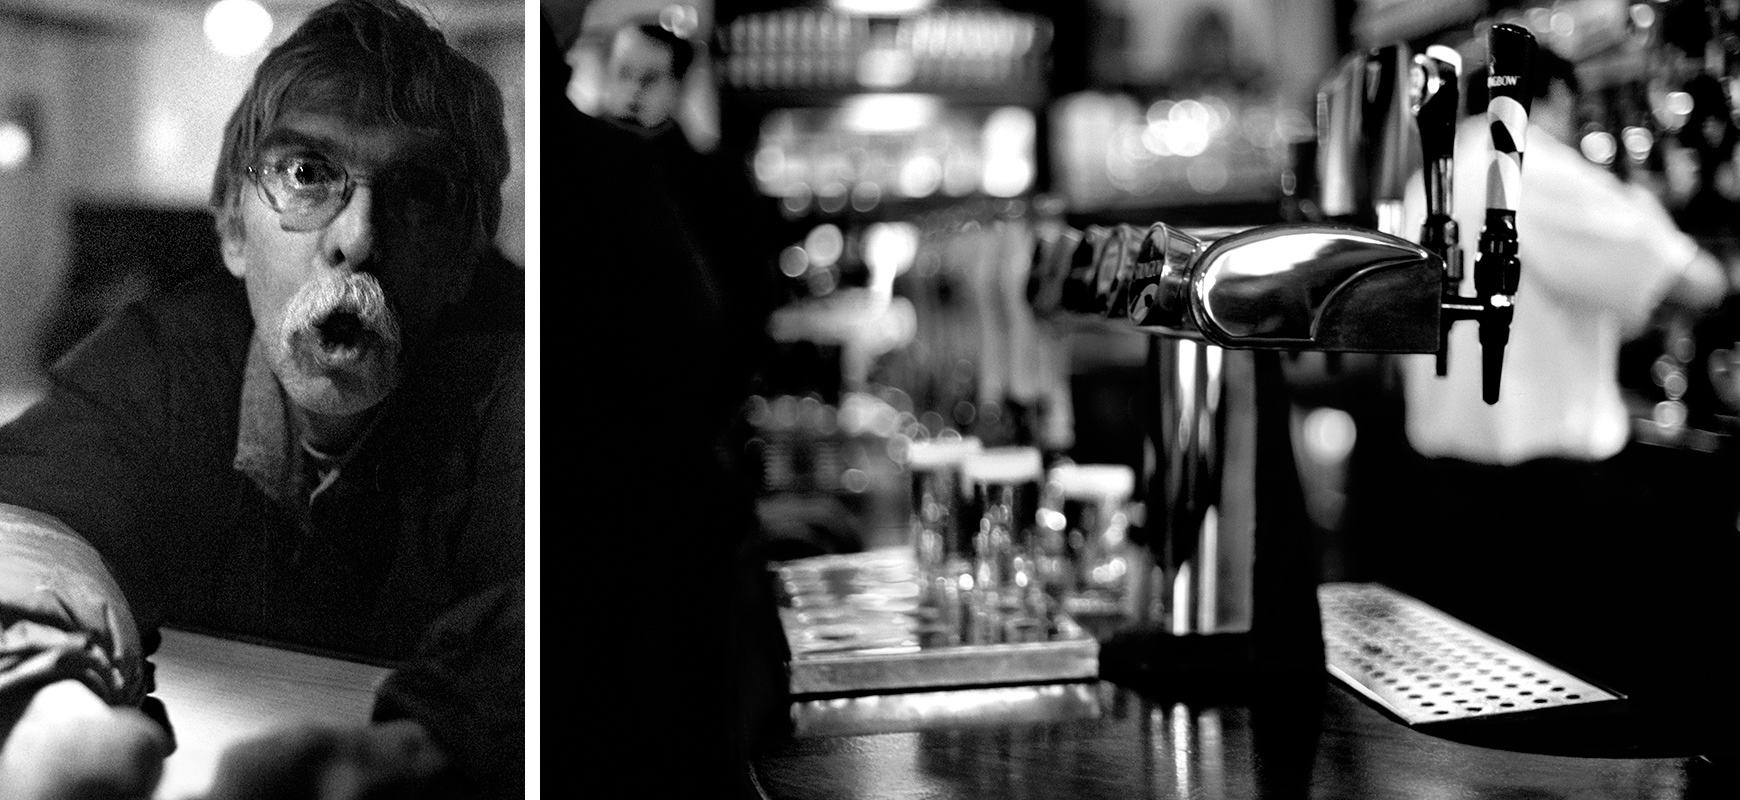 Men begging for a drink vs beer taps